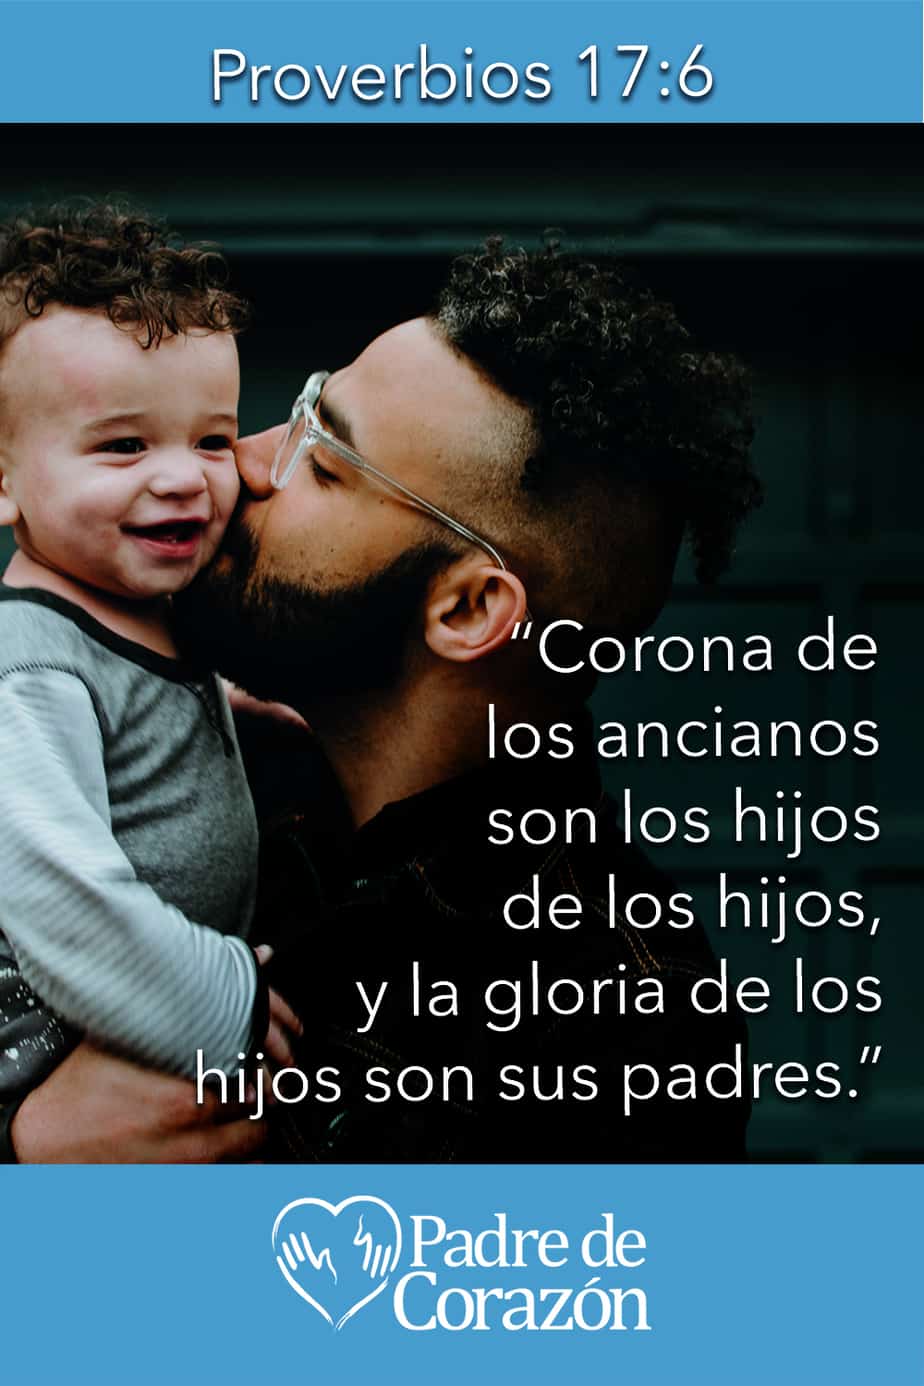 Imagen del padre besando a un niño en la mejilla con una superposición de Proverbios 17: 6